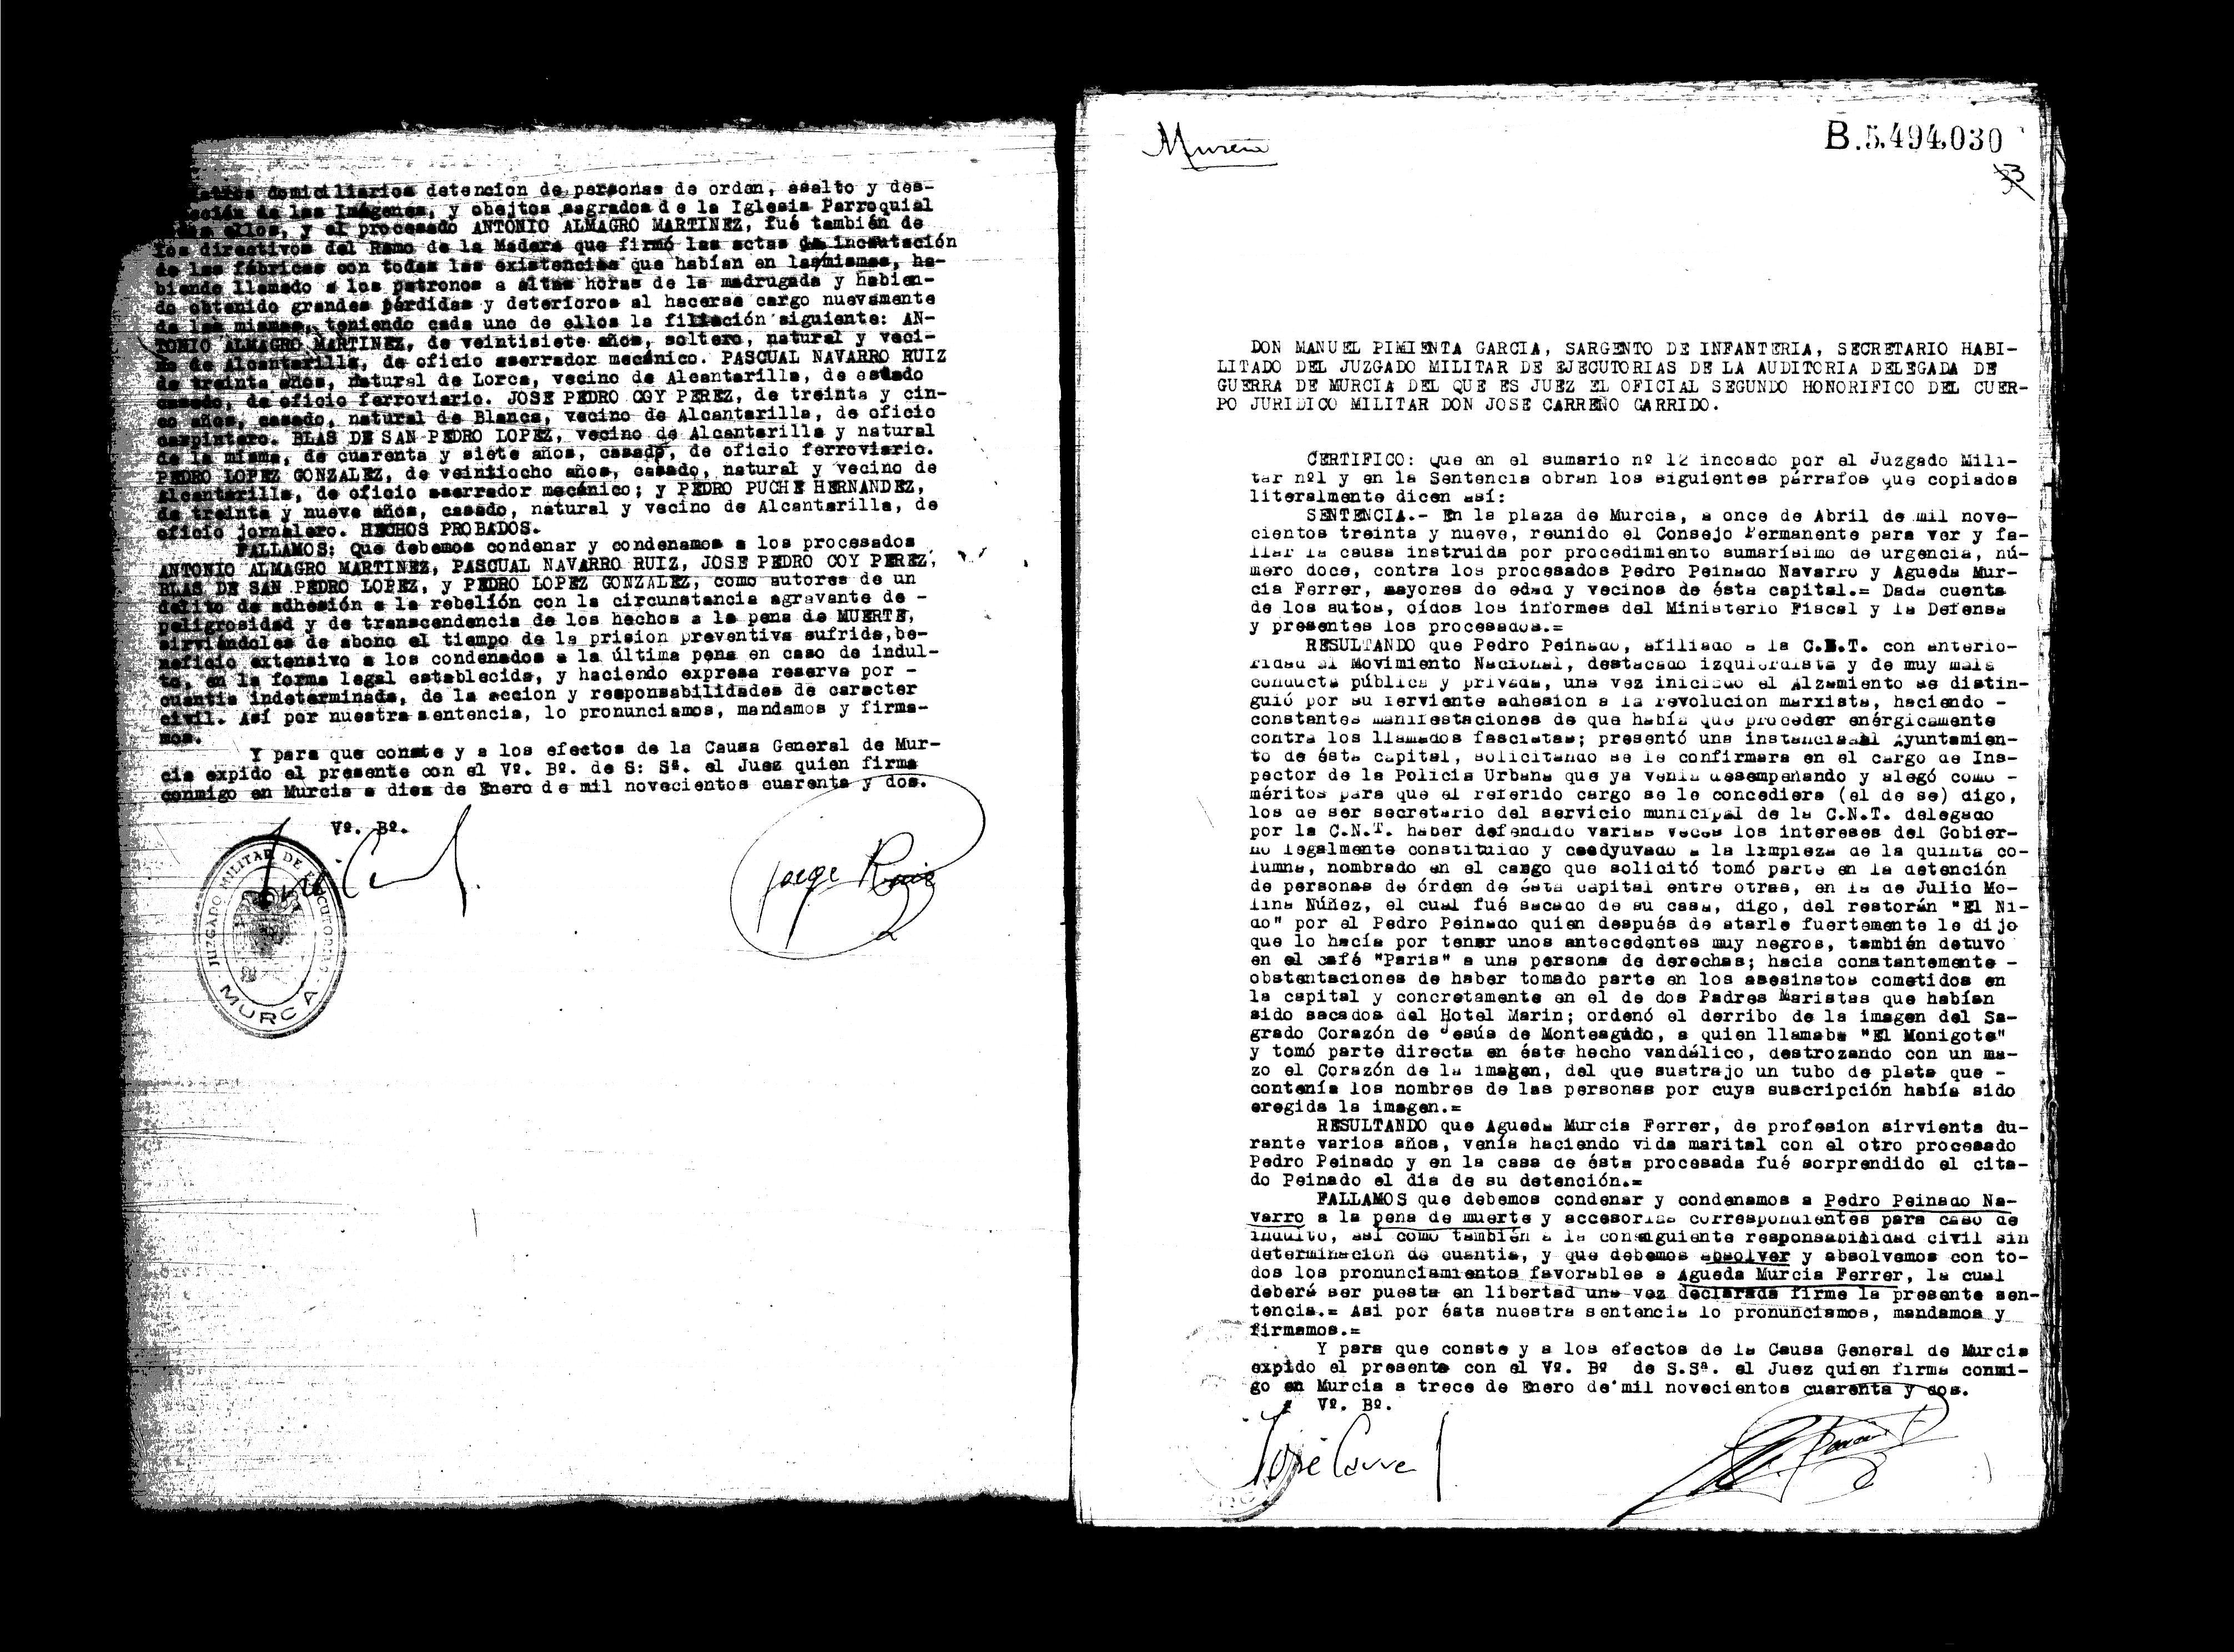 Certificado de la sentencia pronunciada contra Pedro Peinado Navarro y Águeda Murcia Ferrer, causa 12, el 11 de abril de 1939.